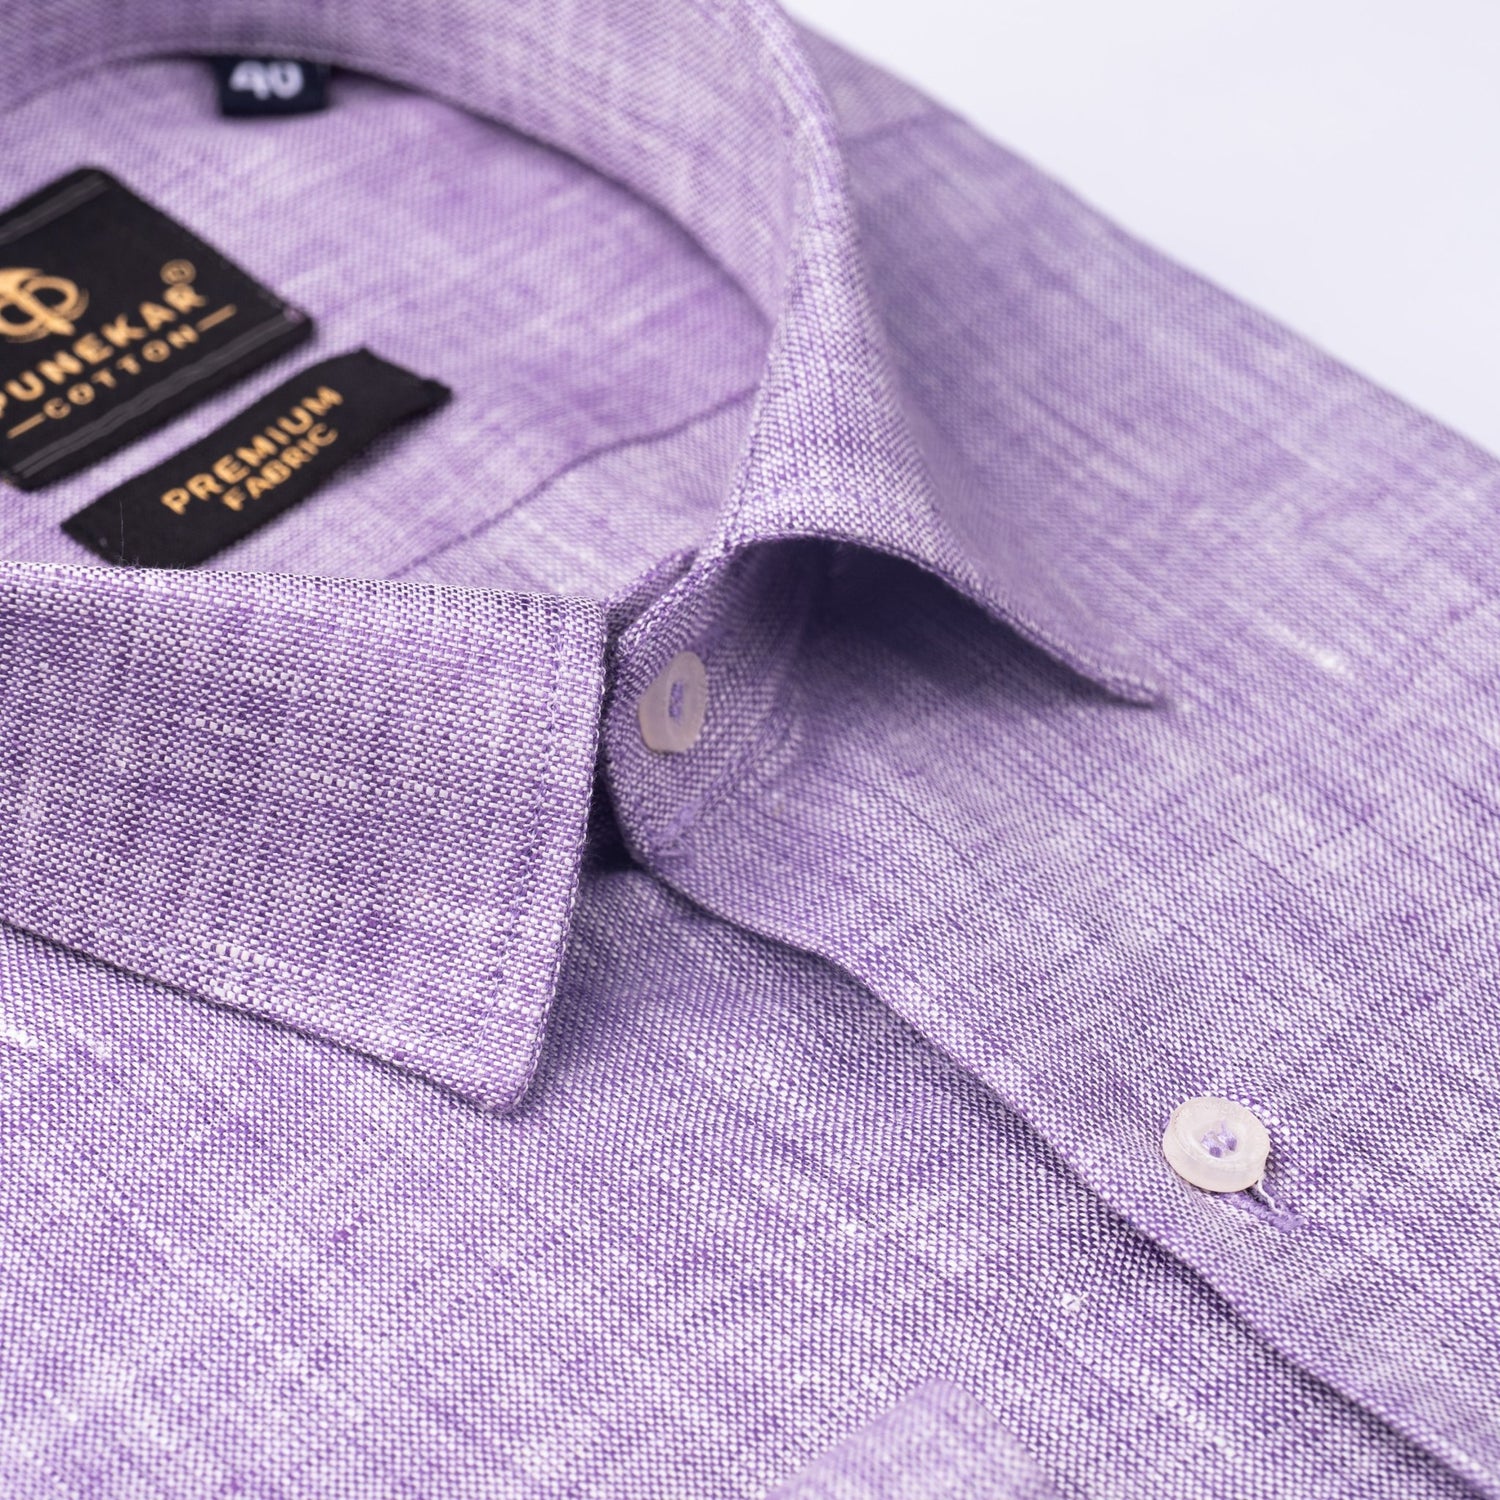 Purple Color Prime Linen Shirt For Men - Punekar Cotton